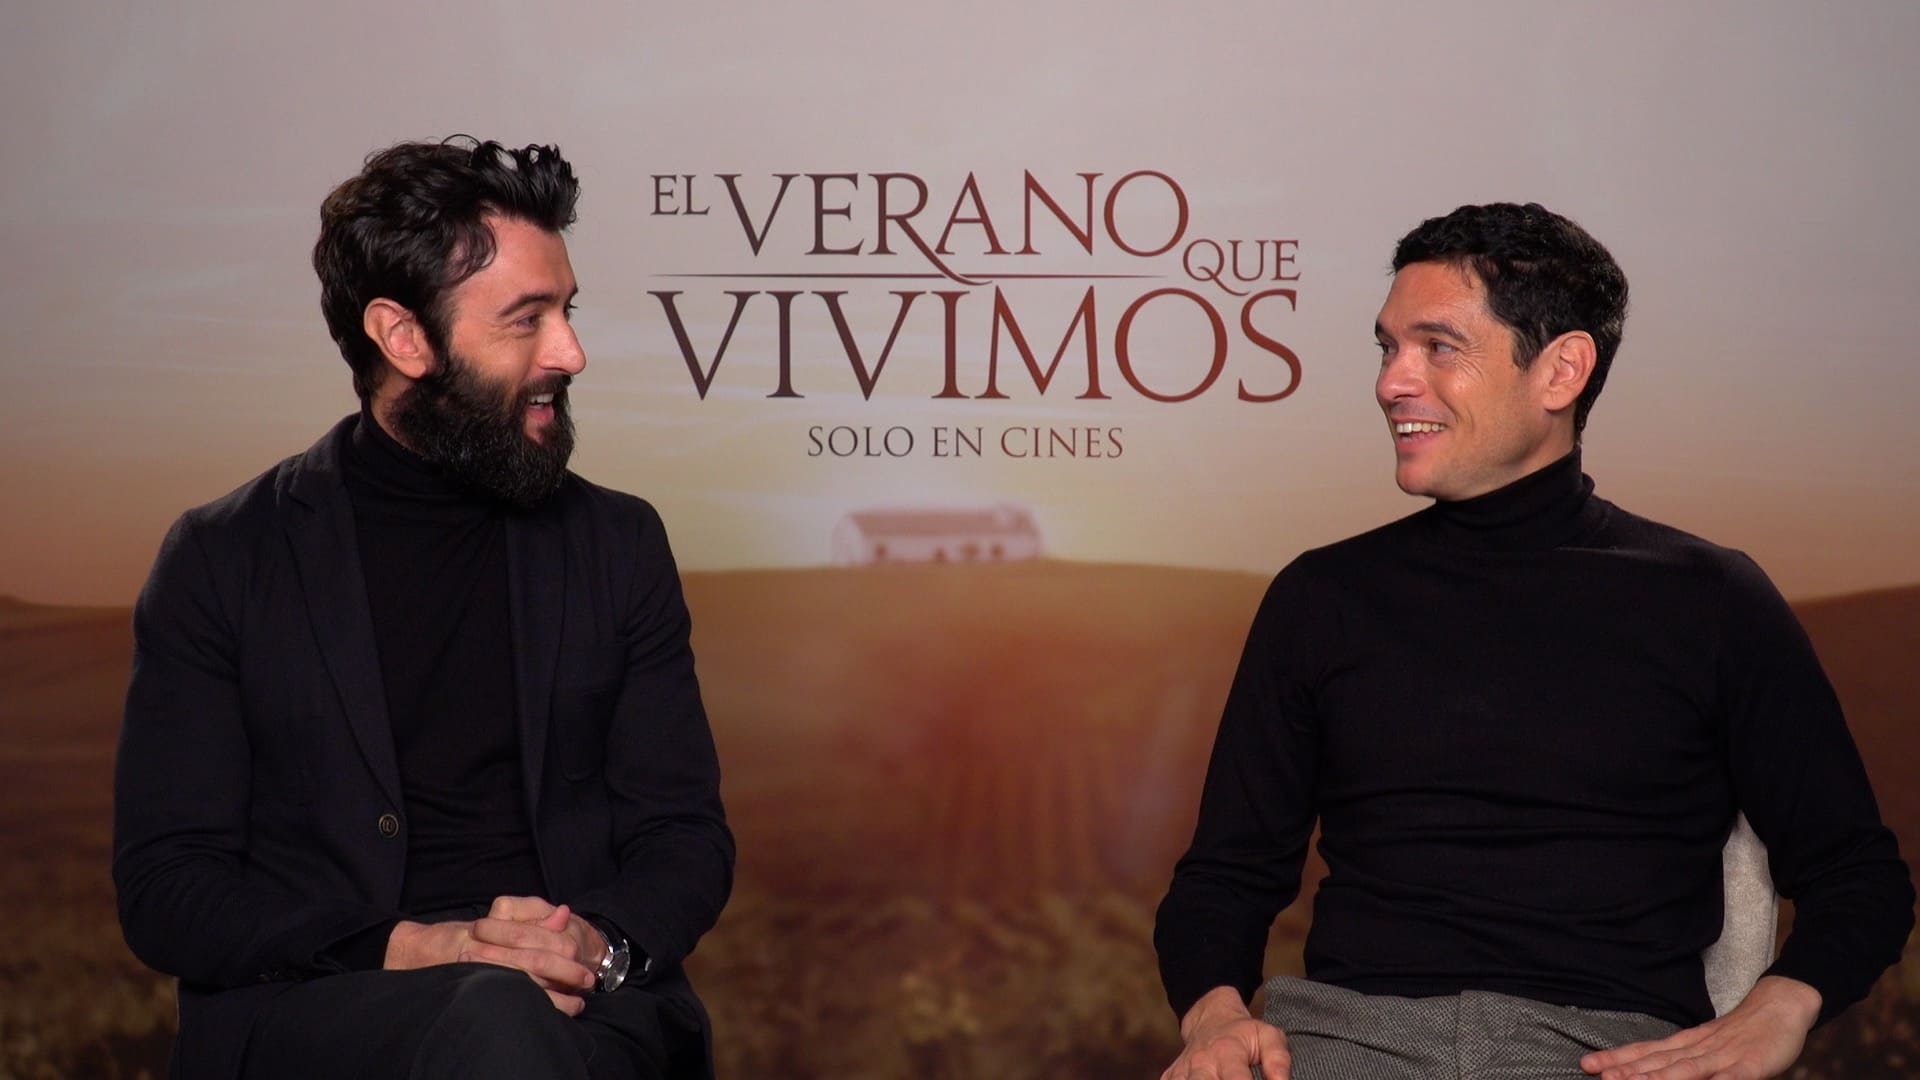 Foto de la entrevista a Javier Rey y Pablo Molinero en "El verano que vivimos"